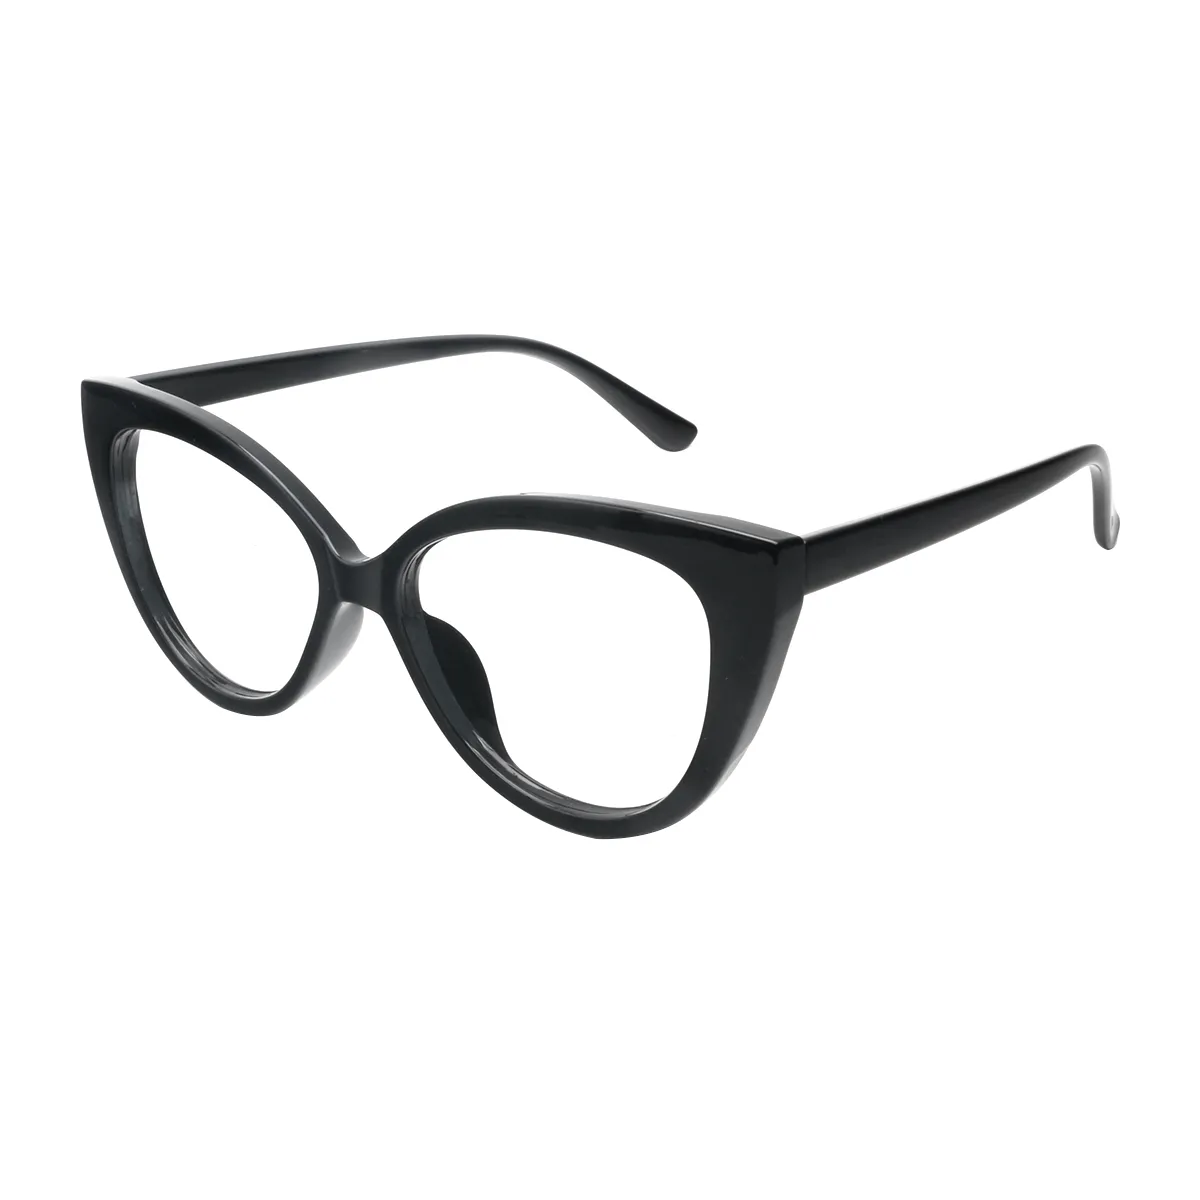 Leila - Cat-eye Black Glasses for Women